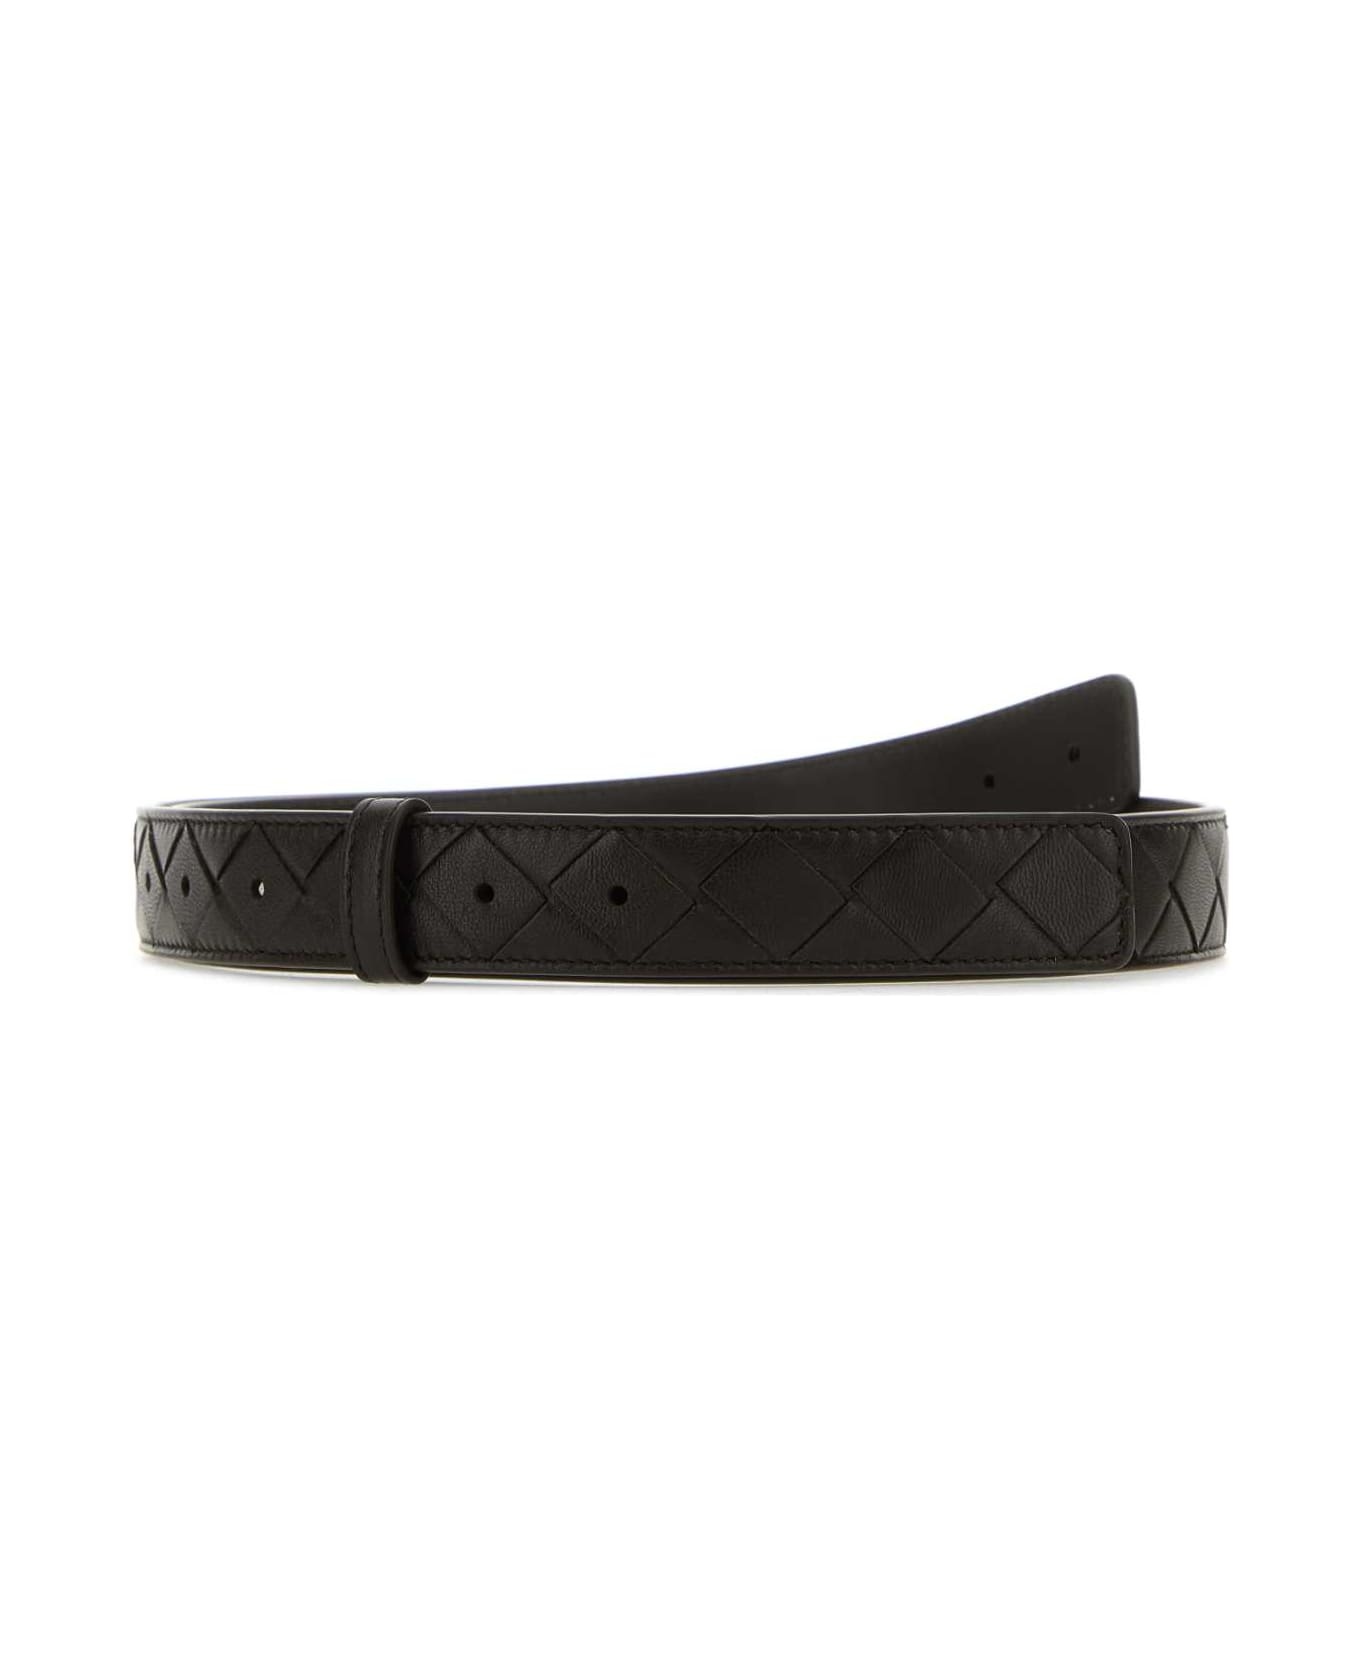 Dark Brown Leather Belt - 1